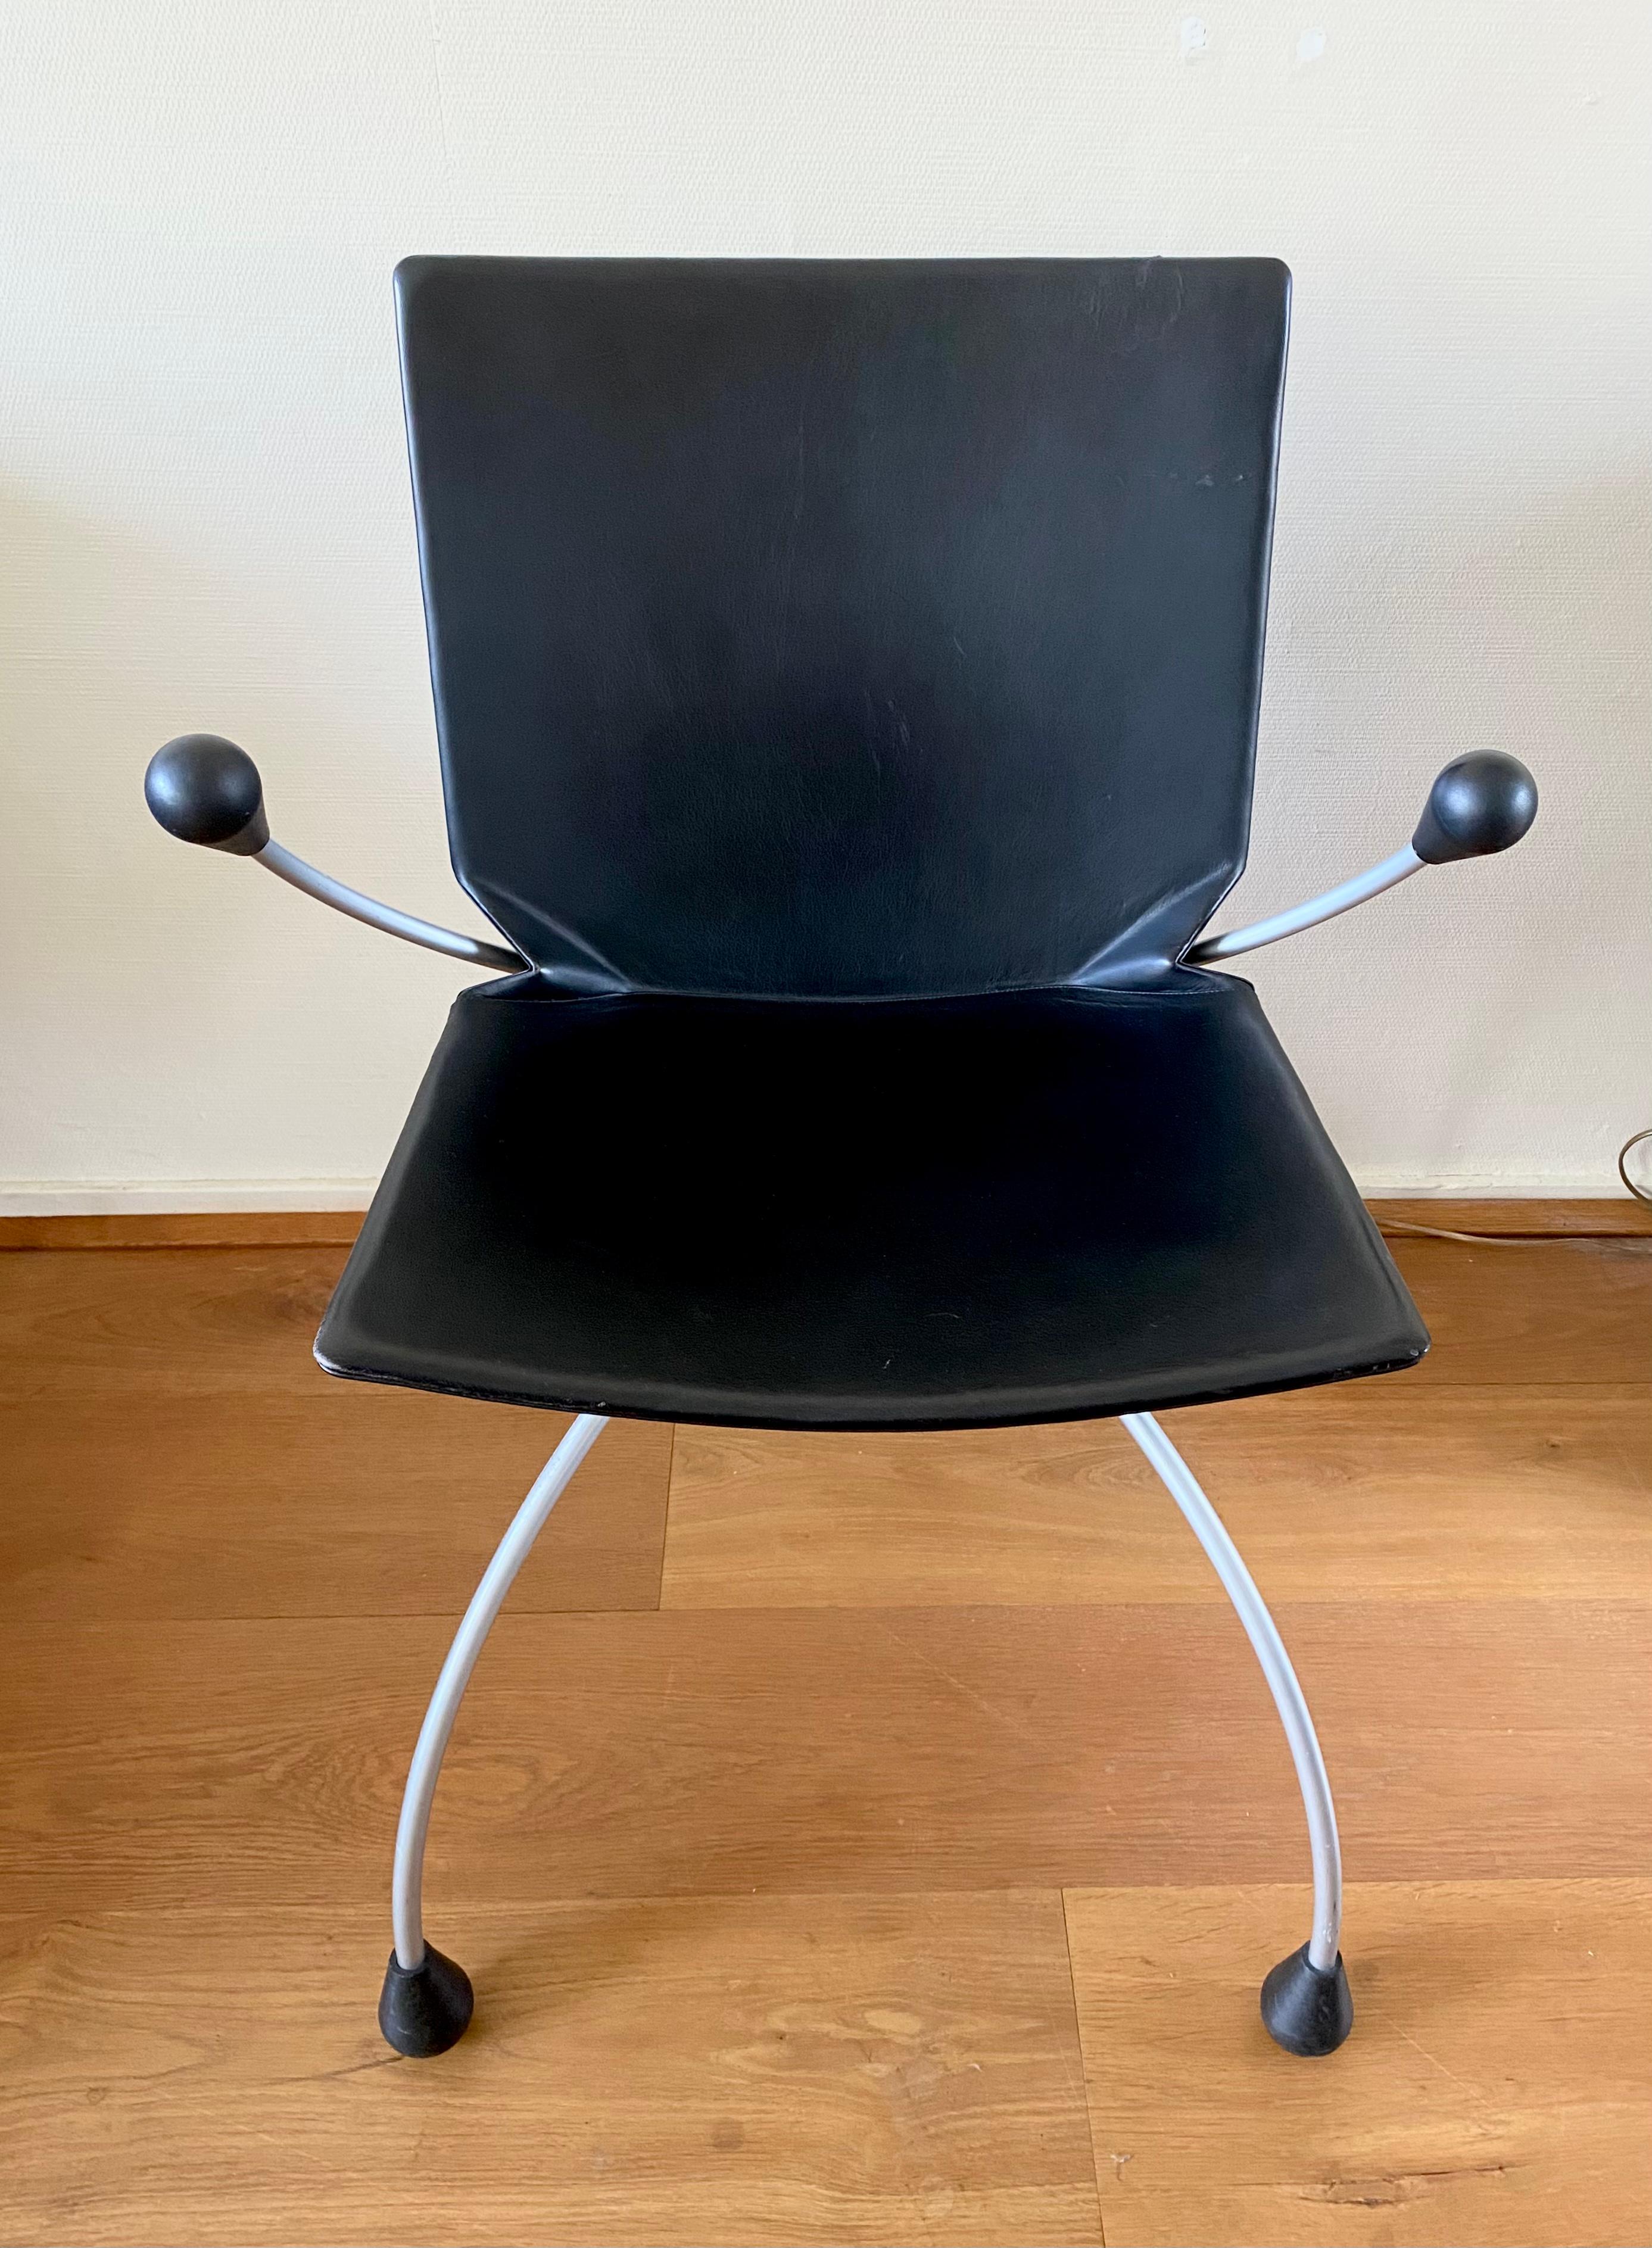 Chaise en cuir noir sur une base en métal, conçue par Pierre Mazairac & Karel Boonzaaijer pour Young International. Le Design/One des années 80 est en bon état avec des usures dues à l'âge et à l'utilisation (voir les images).